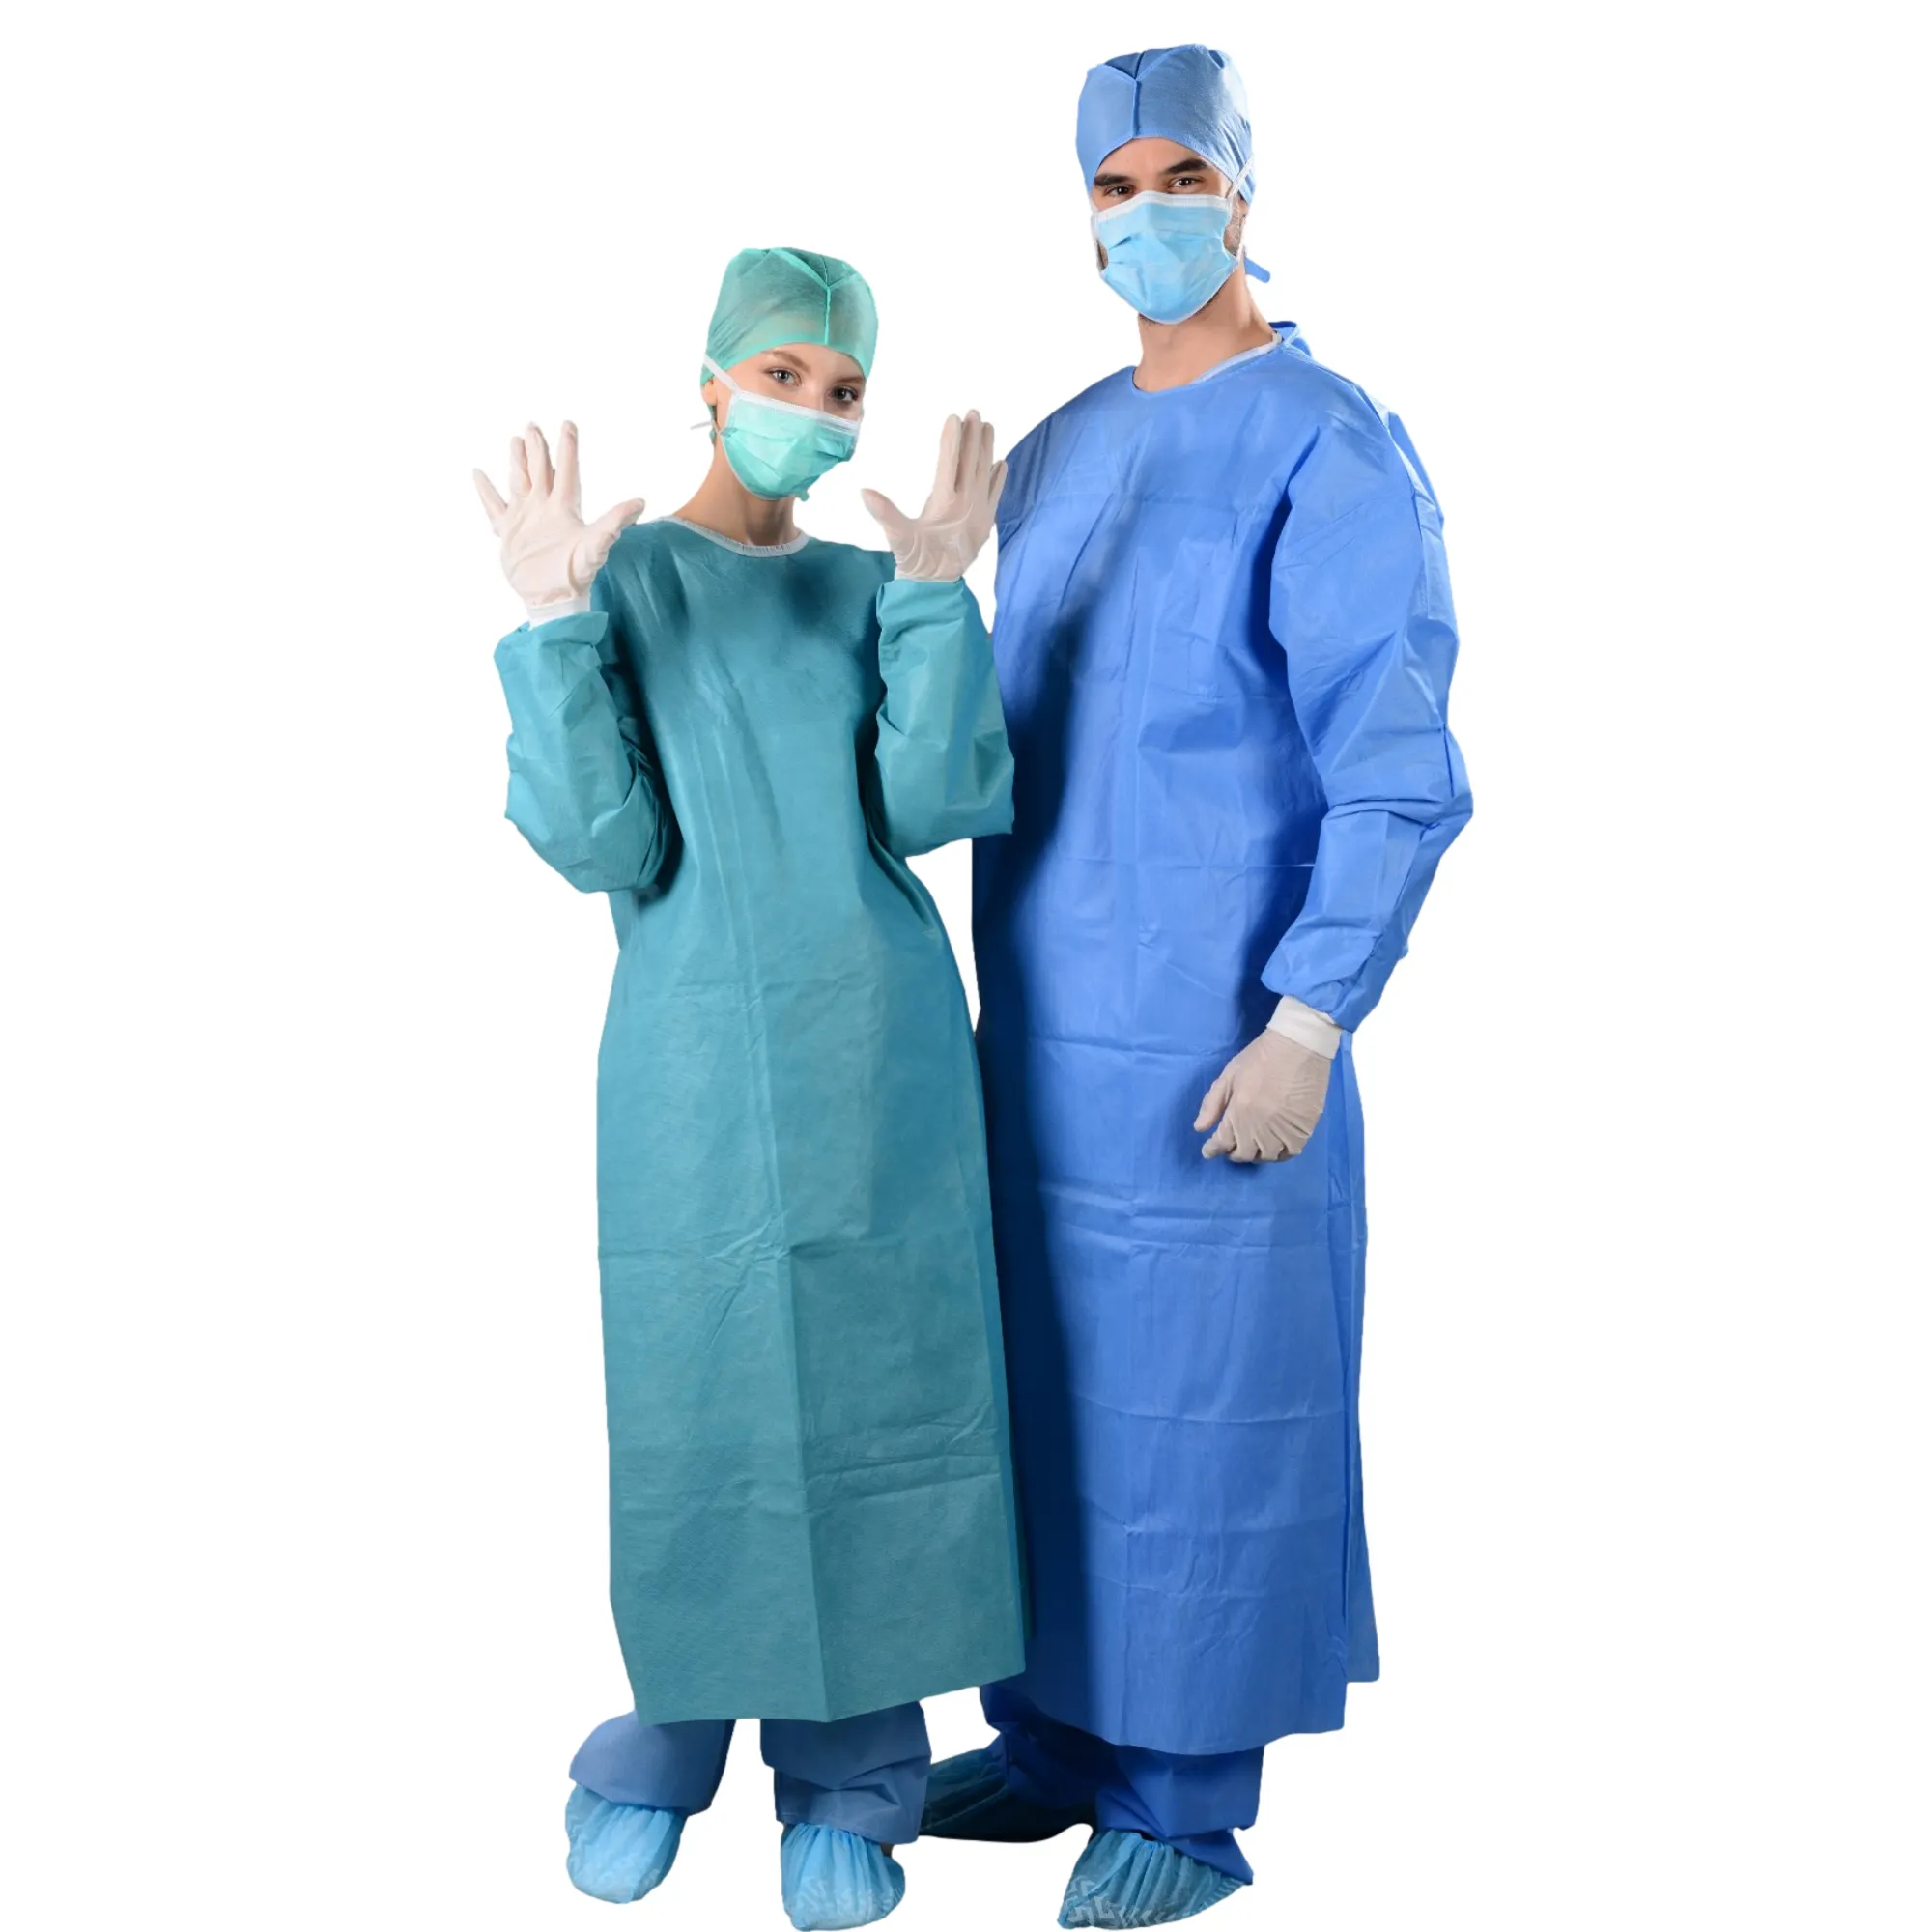 AAMI – robes chirurgicales renforcées jetables de niveau 2, blouses chirurgicales stériles pour les hôpitaux pour les examens et les SMS